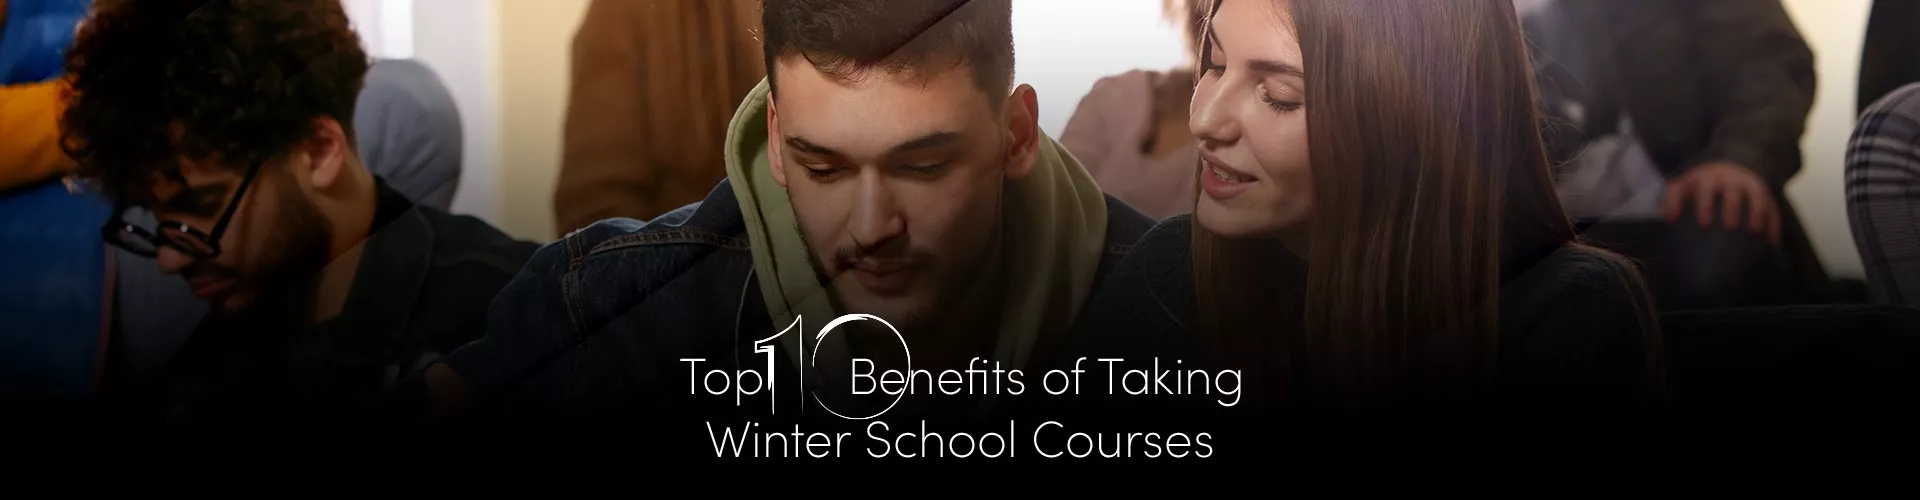 Top 10 Benefits of Taking Winter School Courses